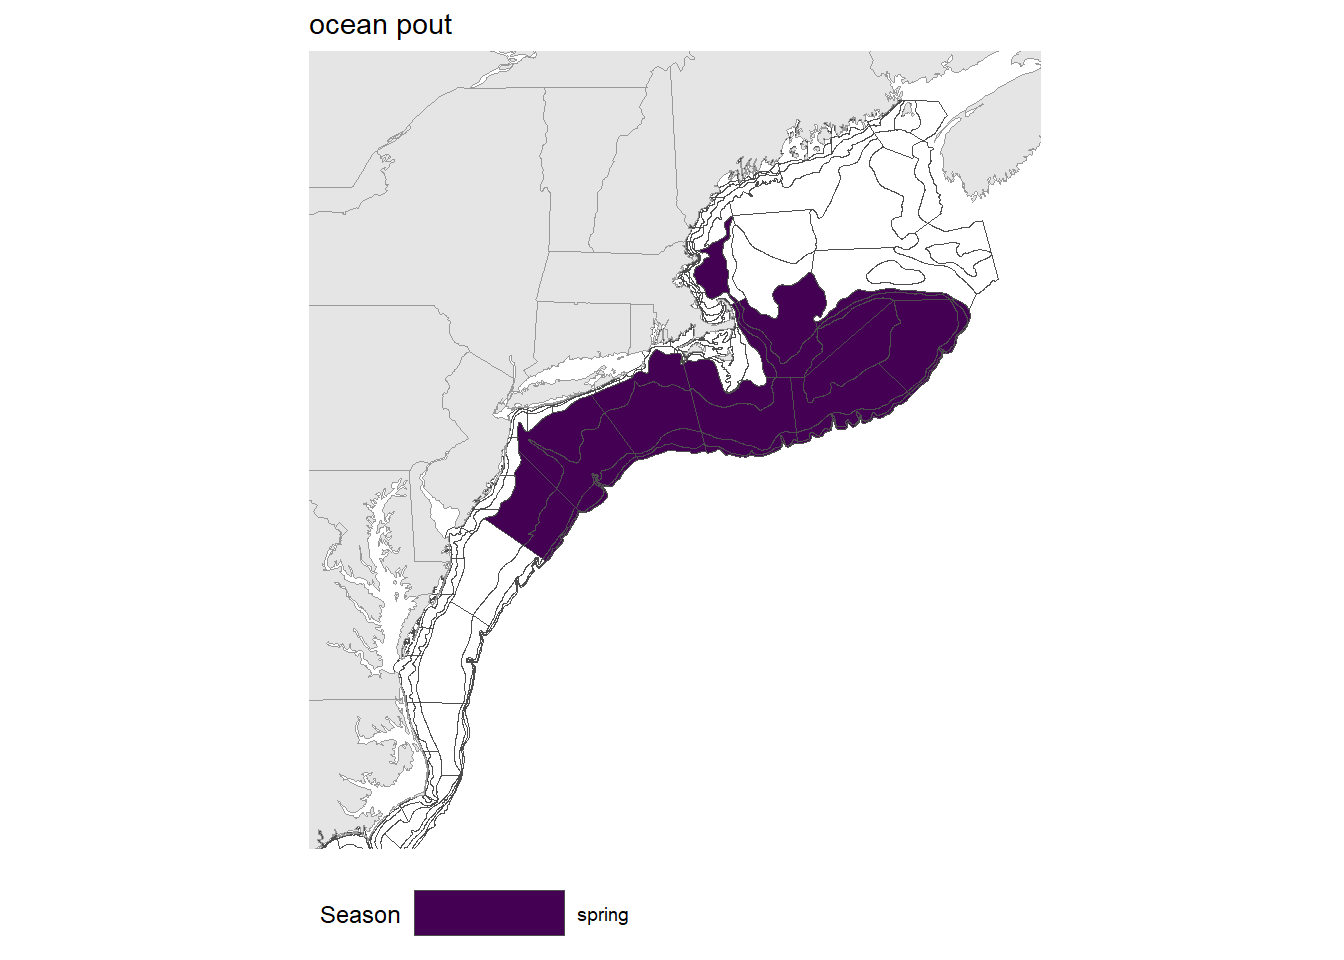 Strata map for the ocean pout (Zoarces americanus) stock on the NE shelf.